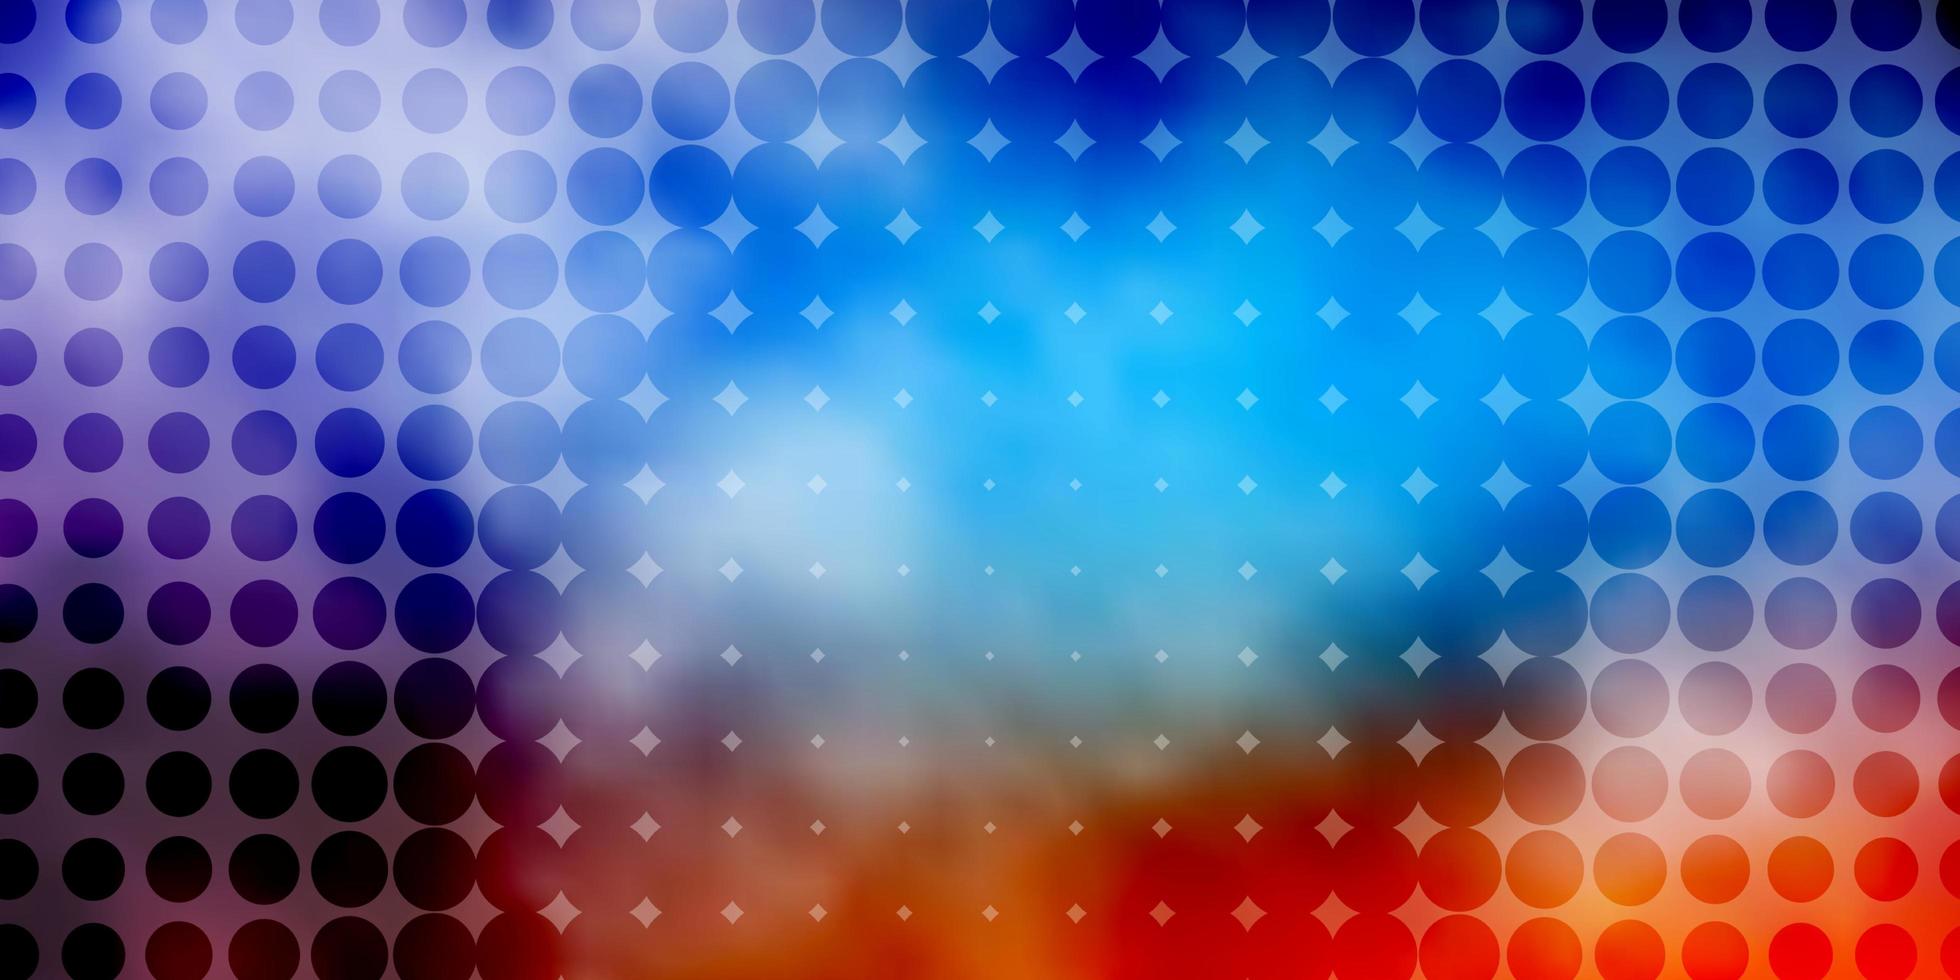 fundo vector vermelho azul claro com círculos brilhantes ilustração abstrata com padrão de gotas coloridas para anúncios empresariais